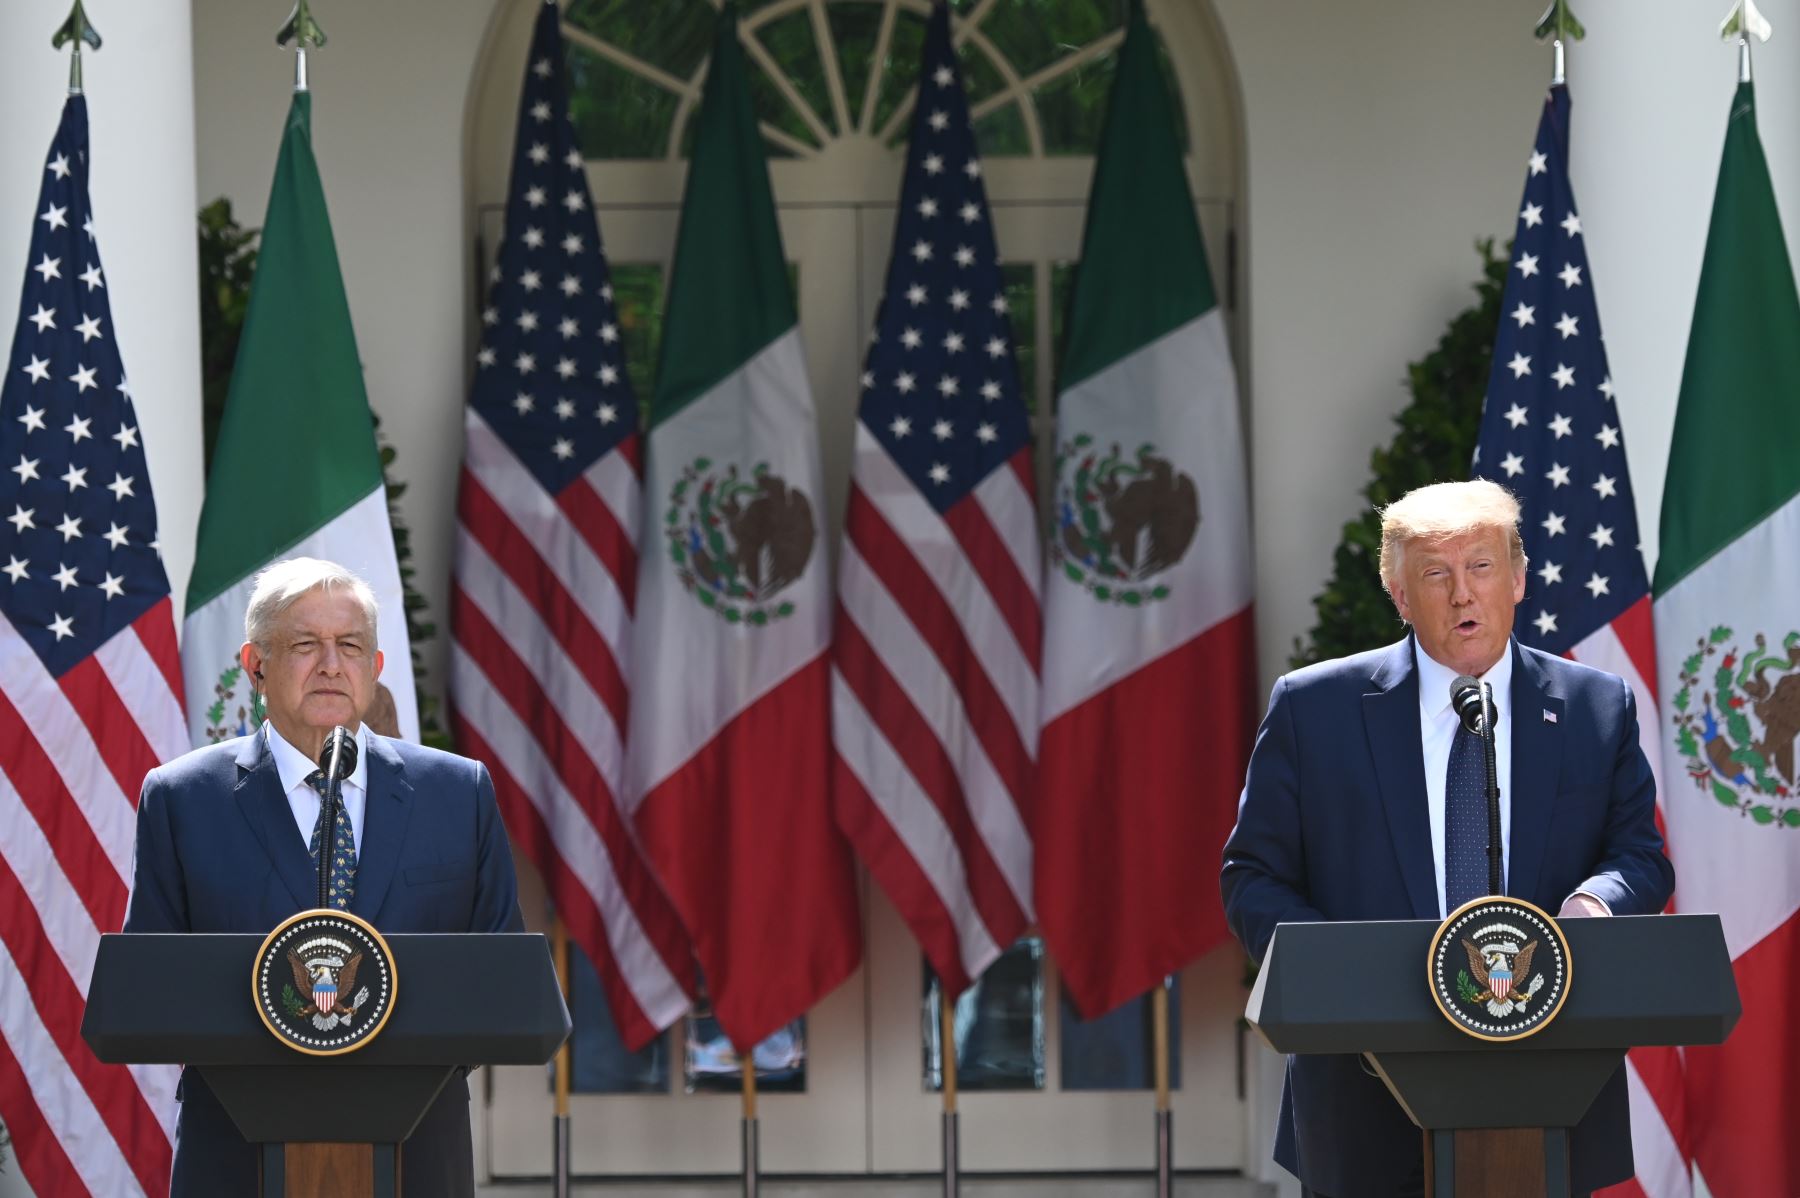 En 2016, el republicano Trump llamó "violadores" y "criminales" a los mexicanos y prometió levantar un muro fronterizo. Foto: AFP